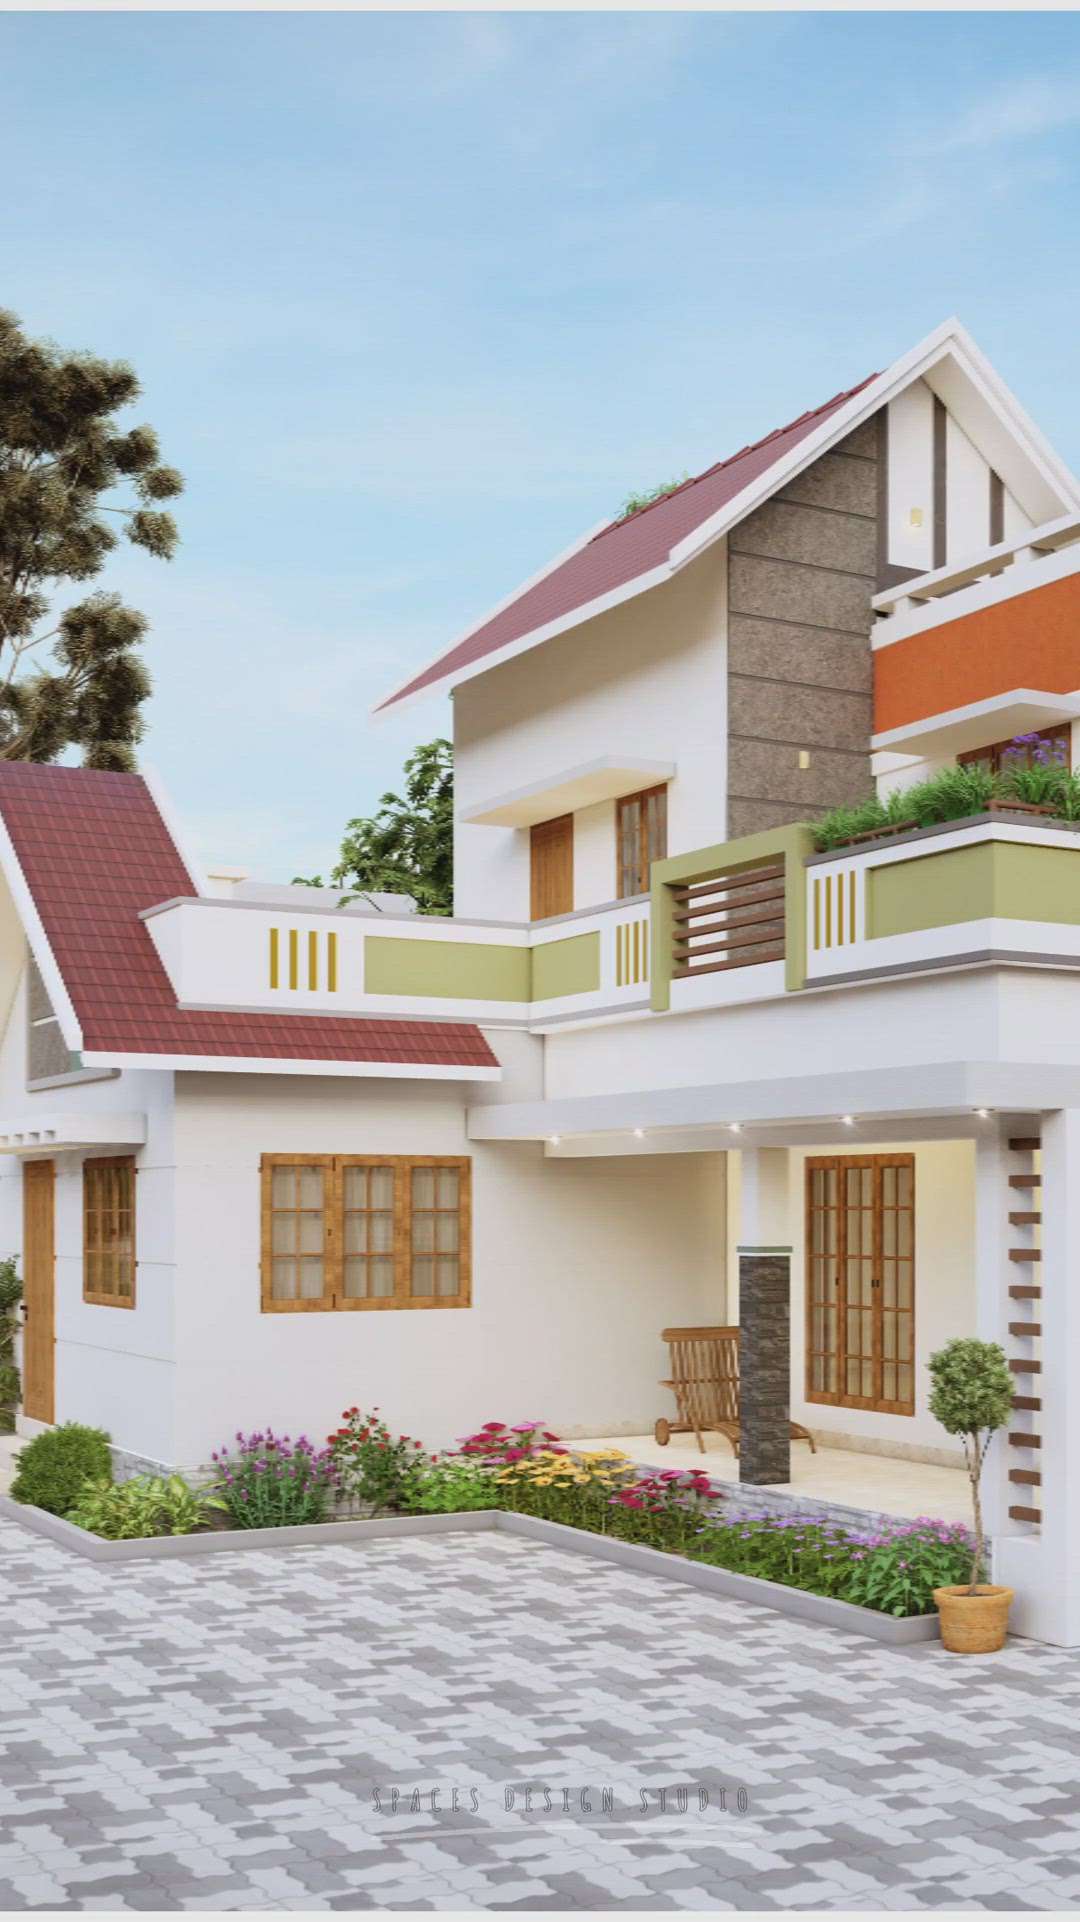 #HouseDesigns # Home exterior  #2180 sqft #Designs  #exteriordesigns  #ElevationHome  #elegant  #stonecarving  #TexturePainting  #color  #GardeningIdeas